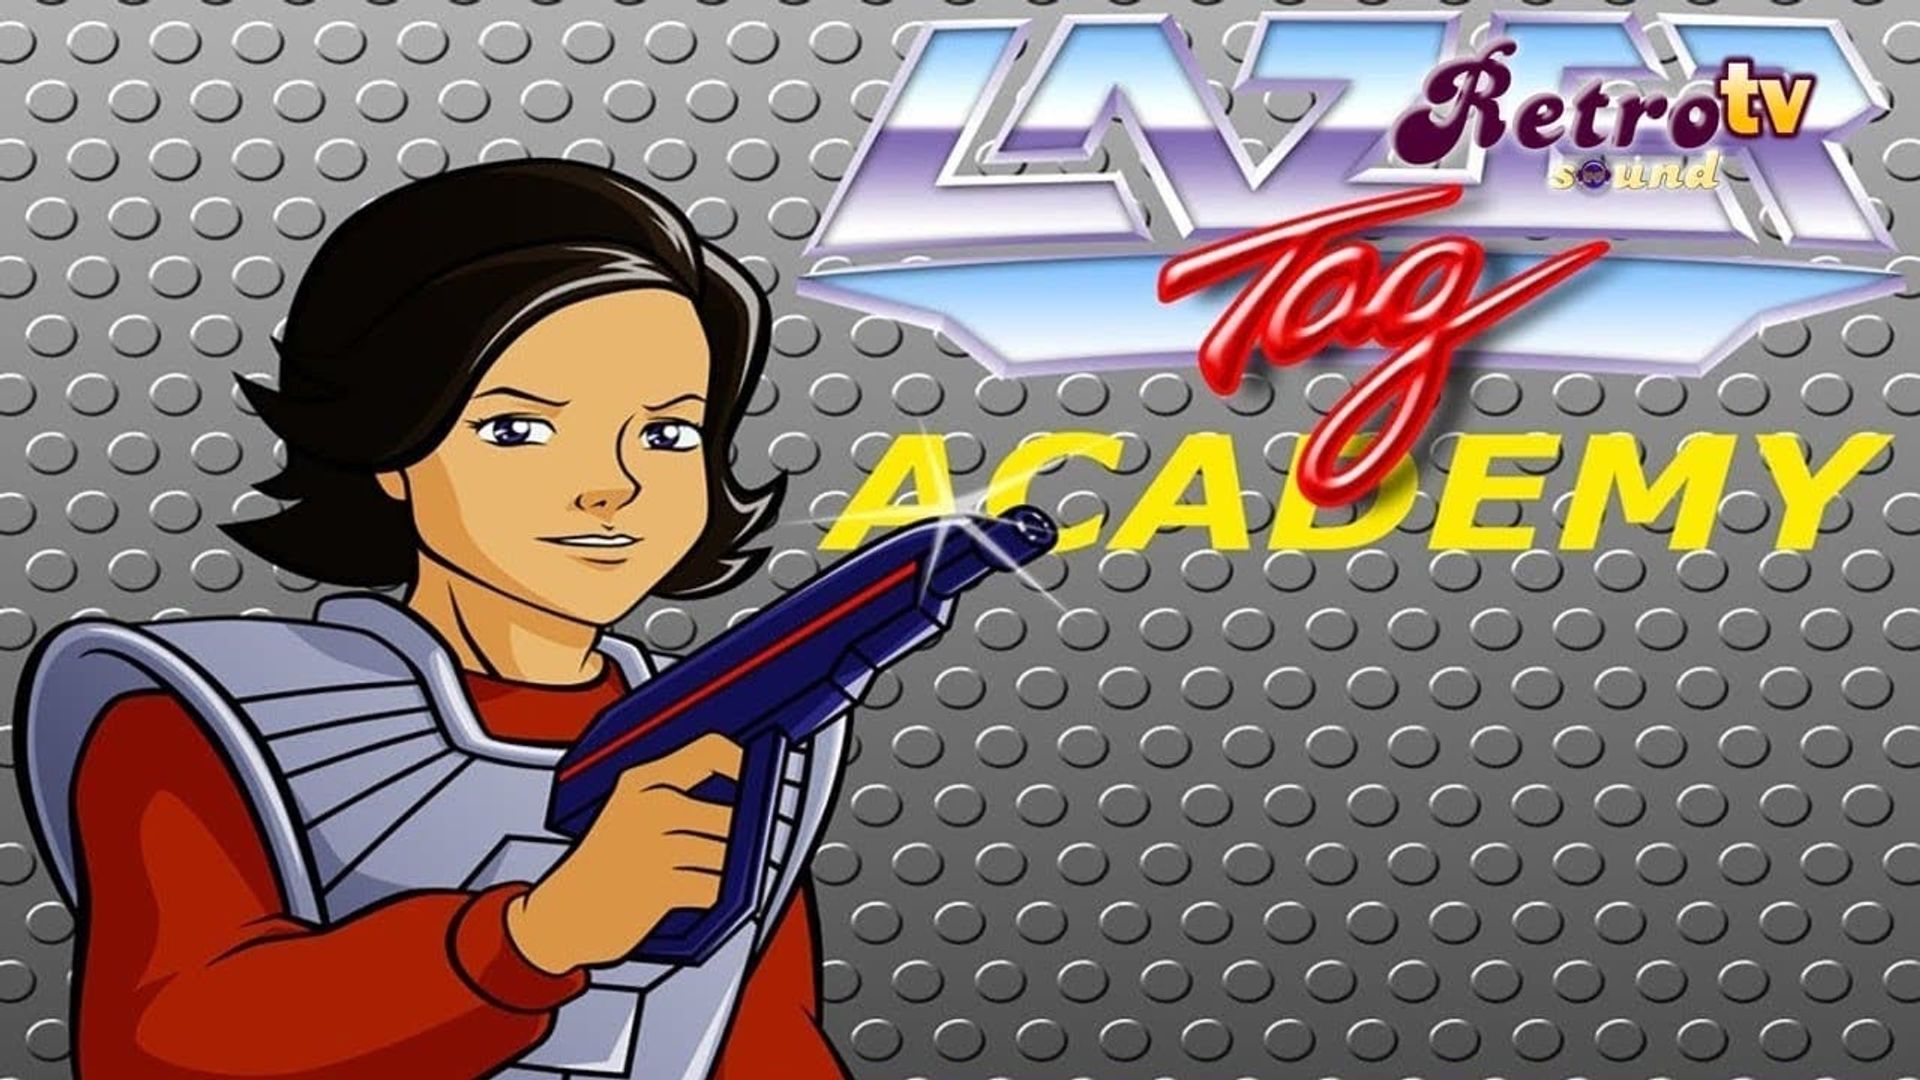 Lazer Tag Academy background